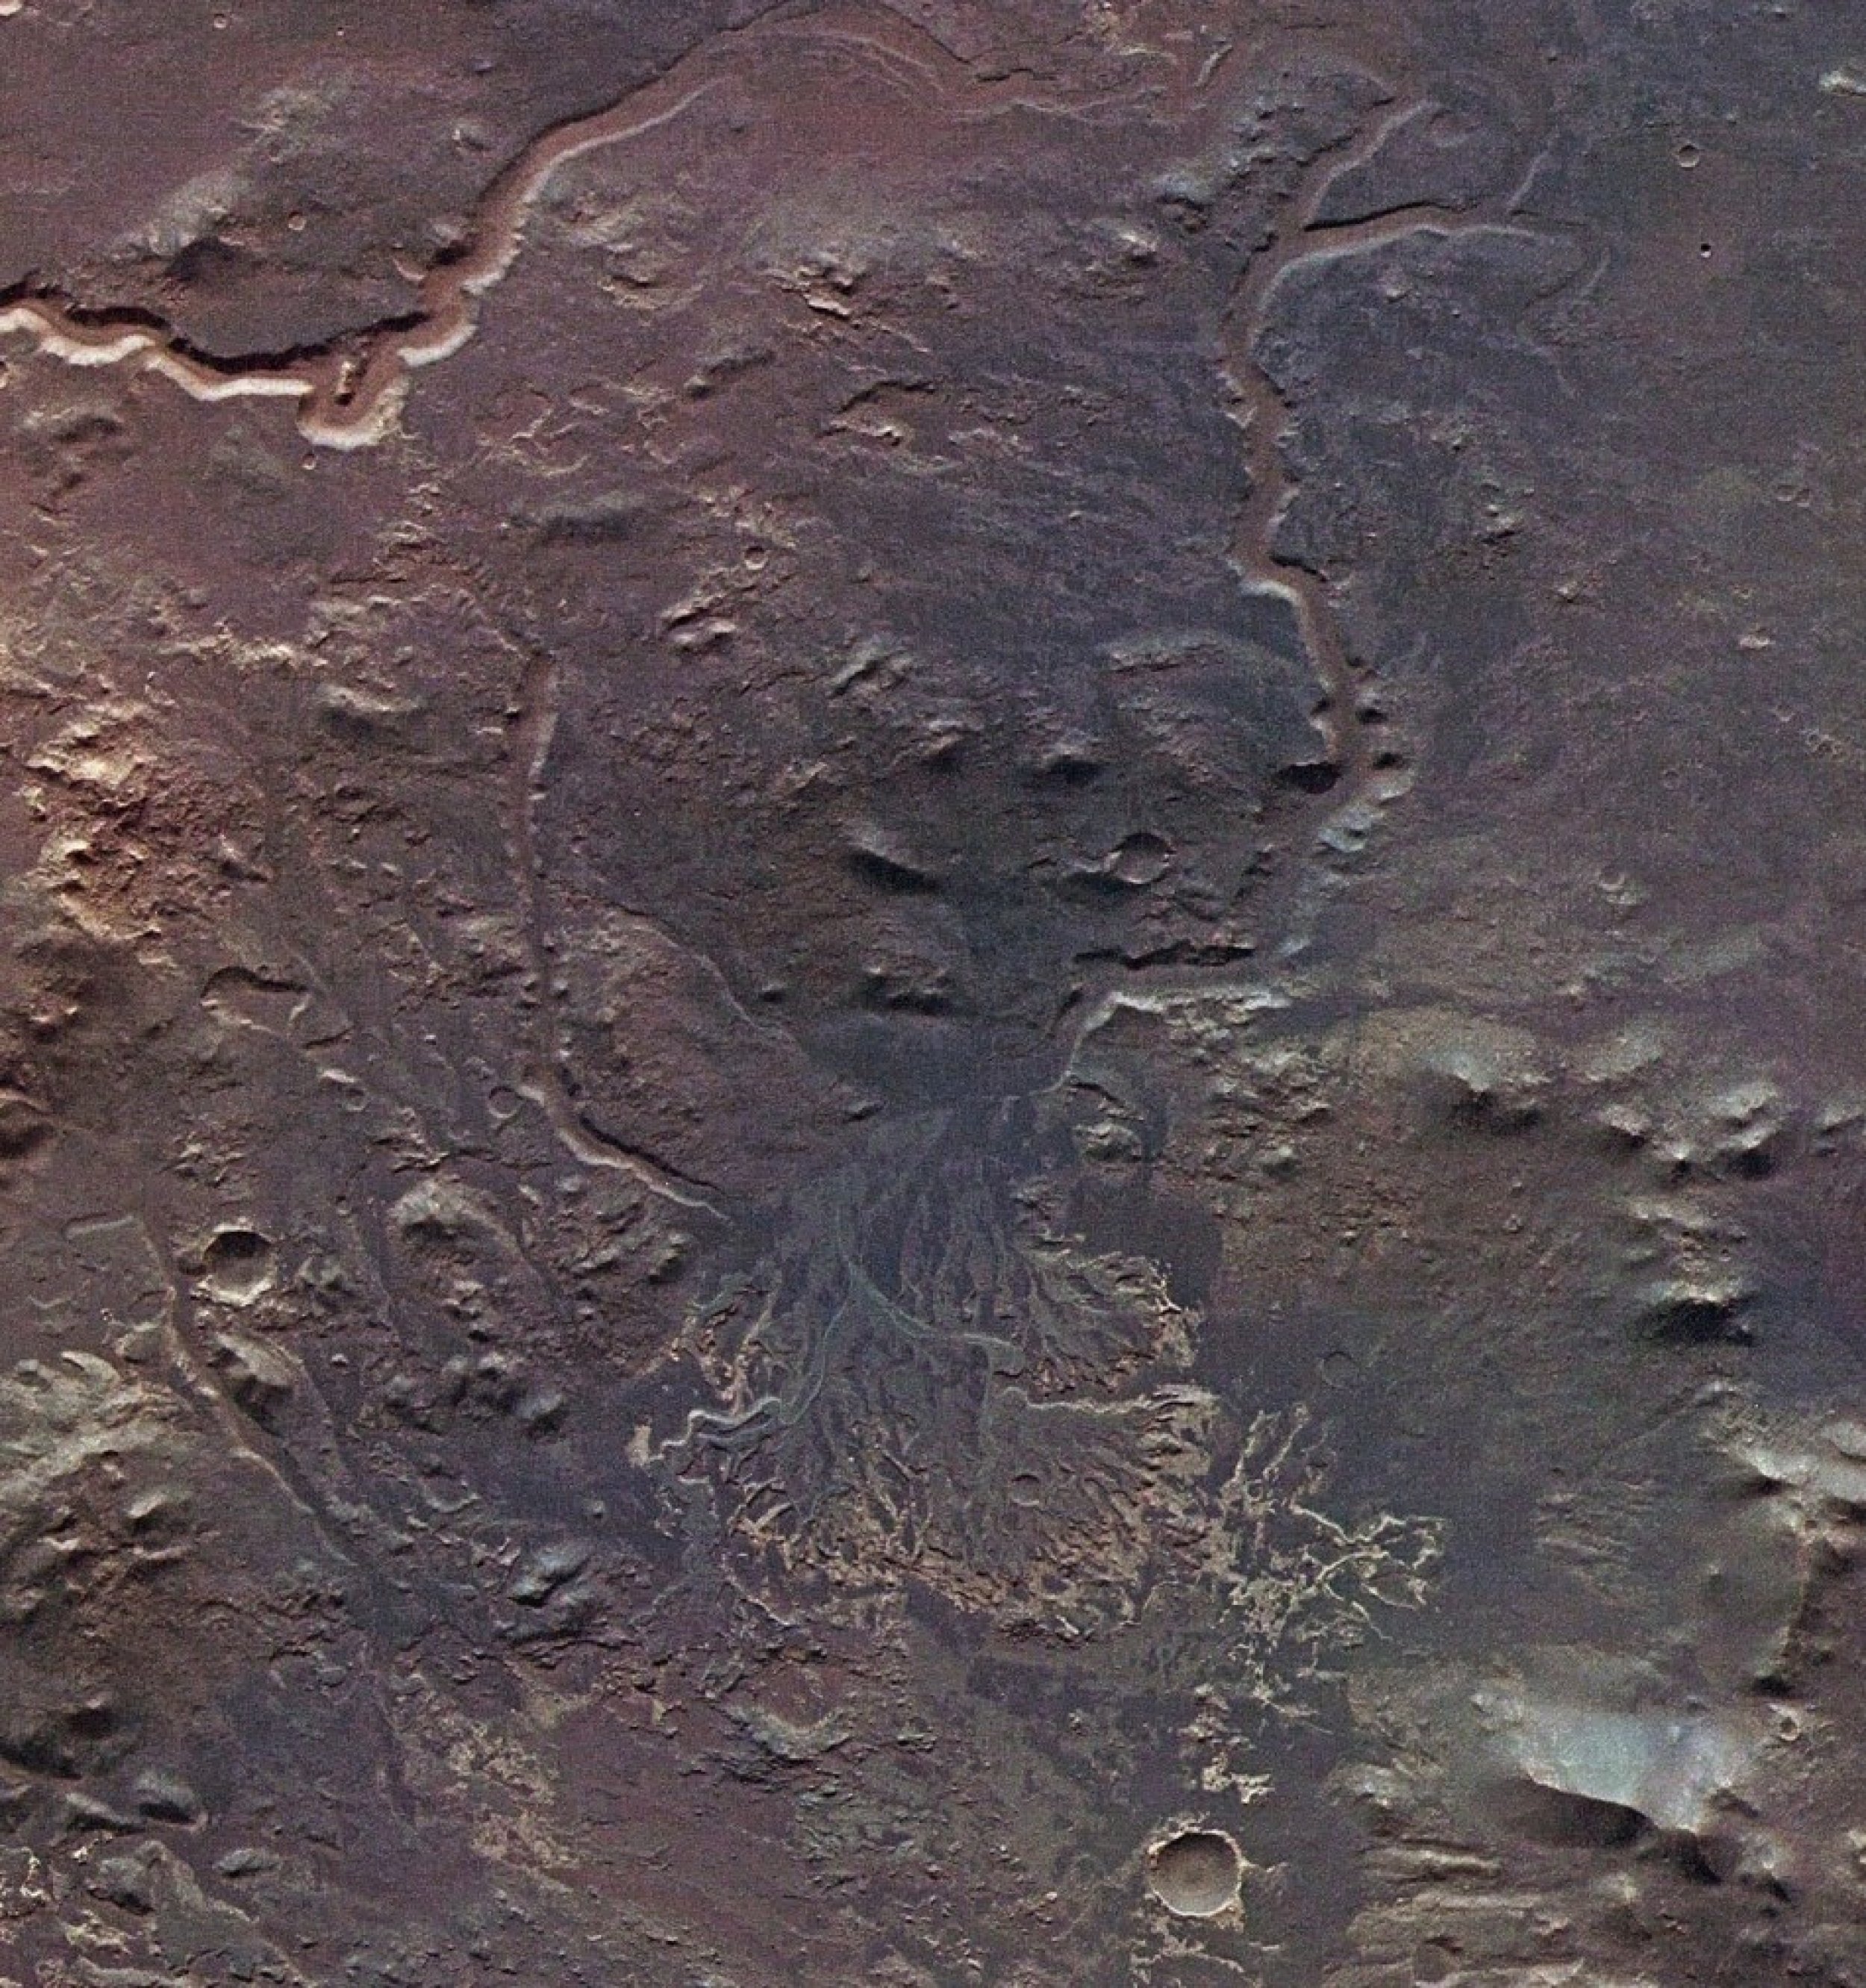 Delta in Eberswalde crater